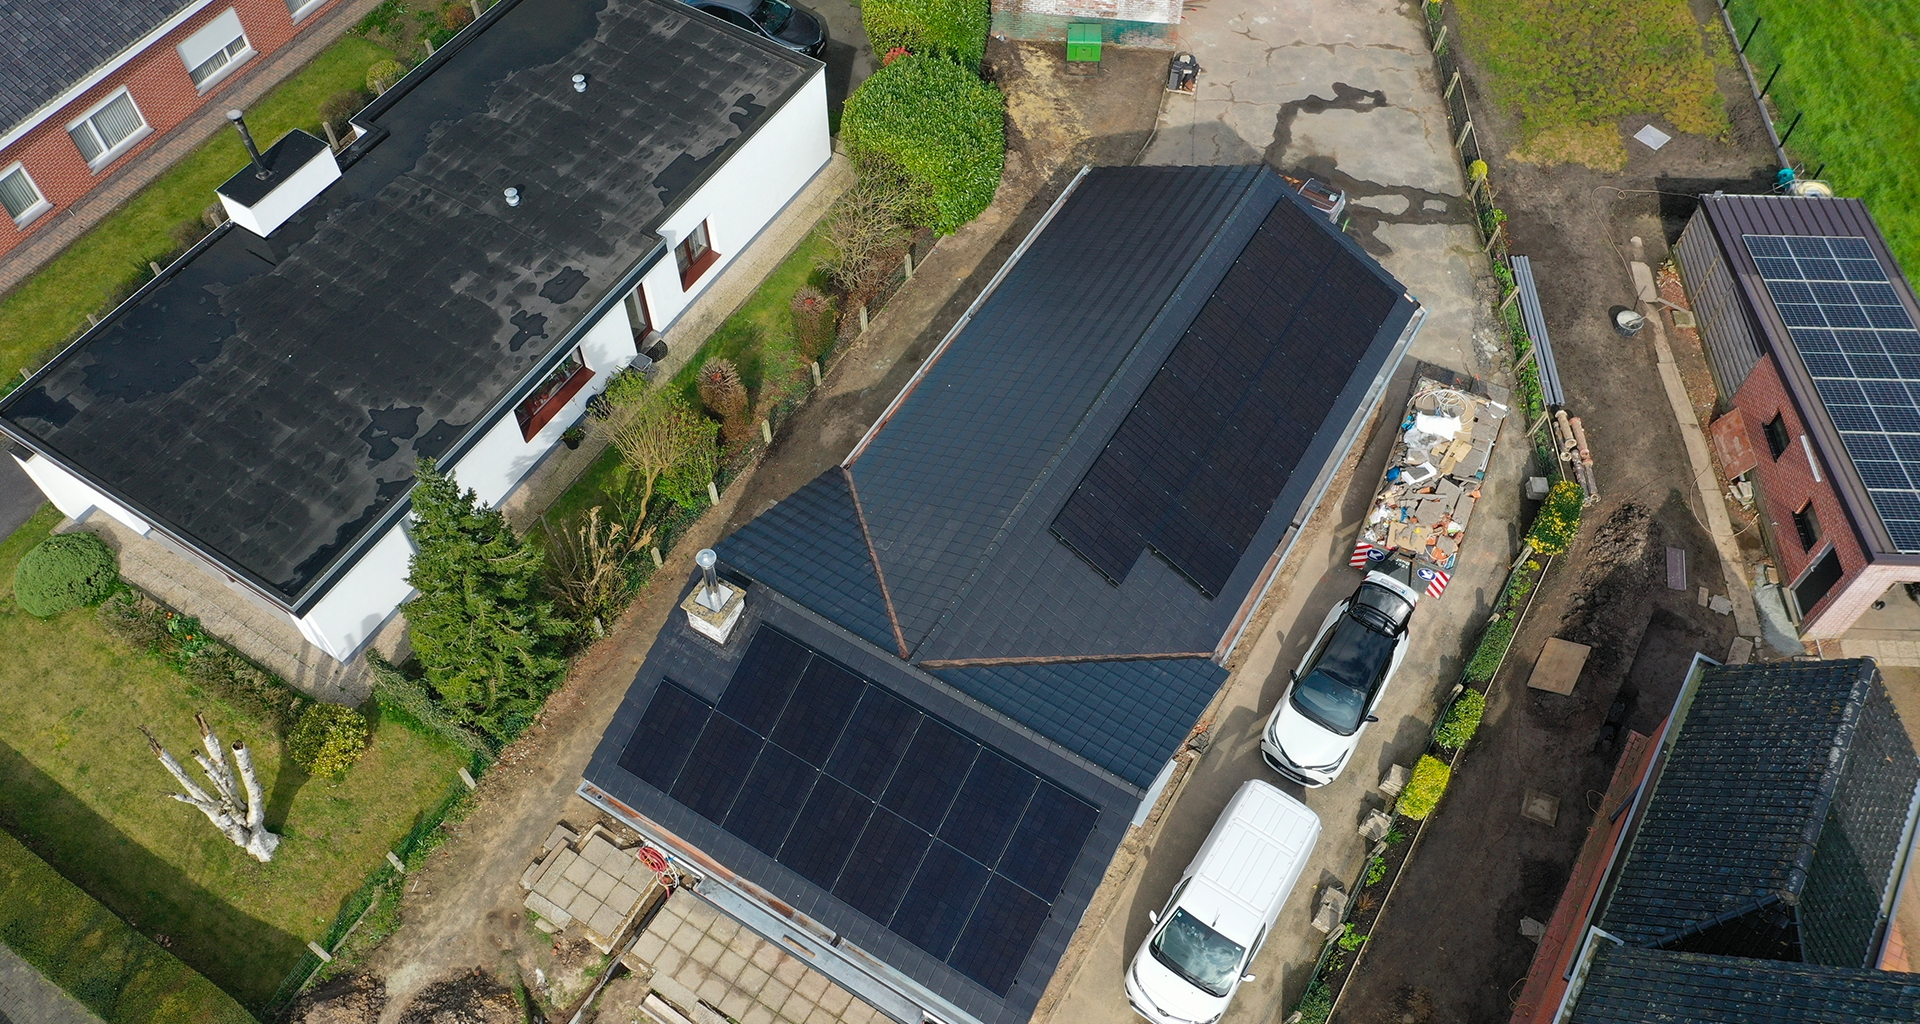 Installatie van fotovoltaïsche panelen in Aalter